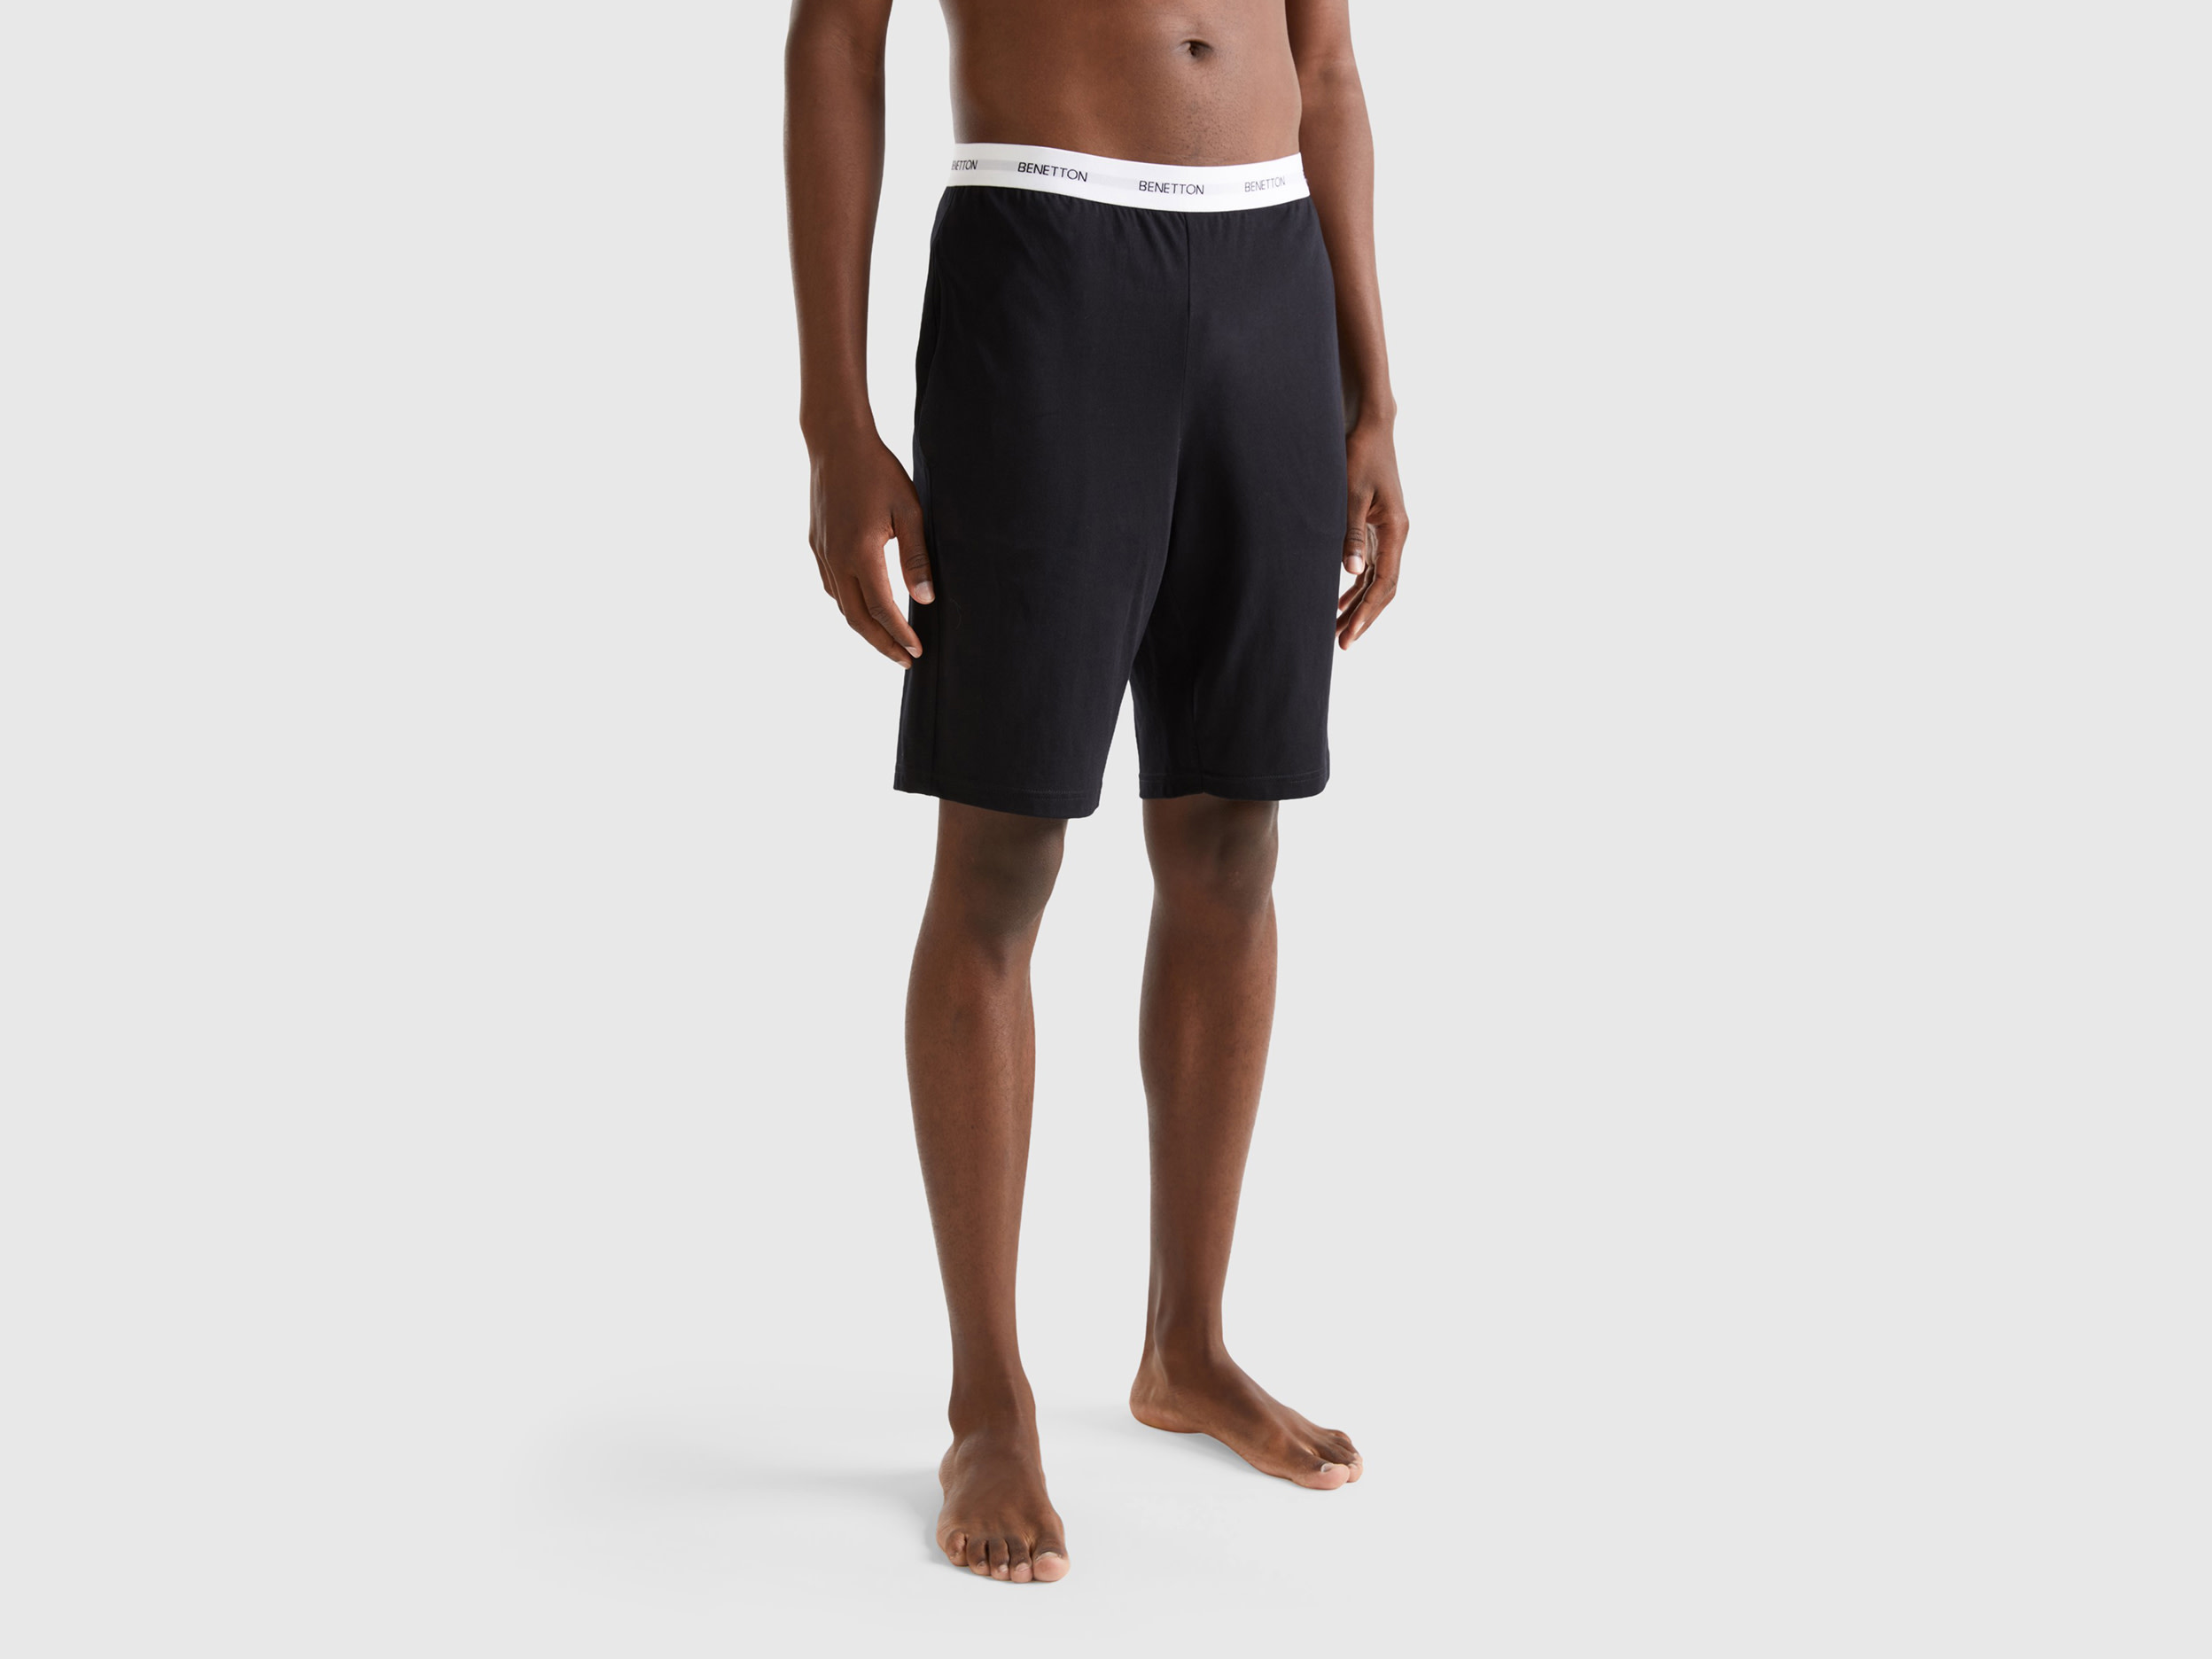 Benetton, 100% Cotton Shorts, size M, Black, Men